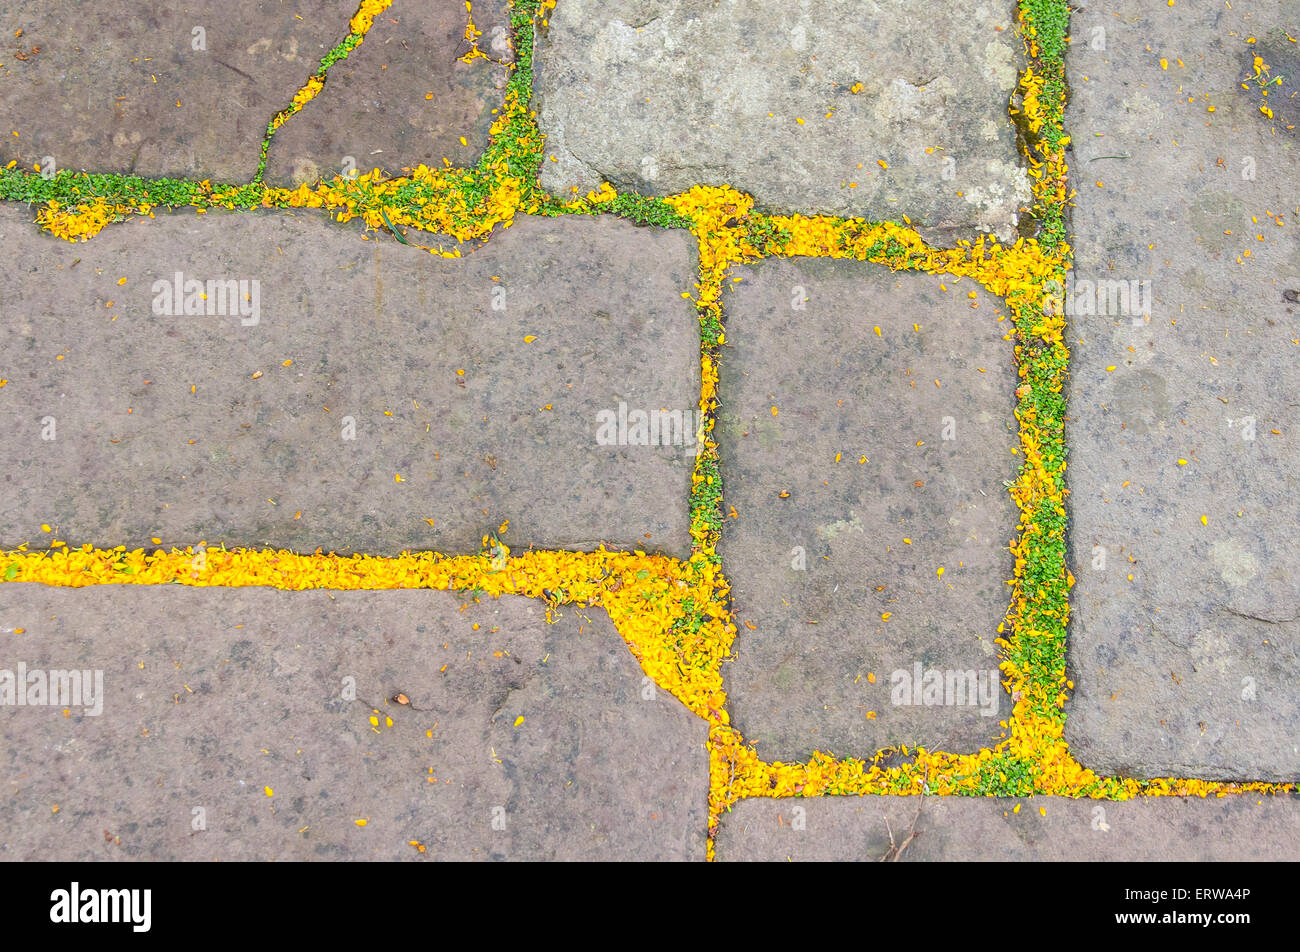 Alte steinerne Gehweg in England mit gefallenen gelben Blütenblättern und kleine Blätter Stockfoto